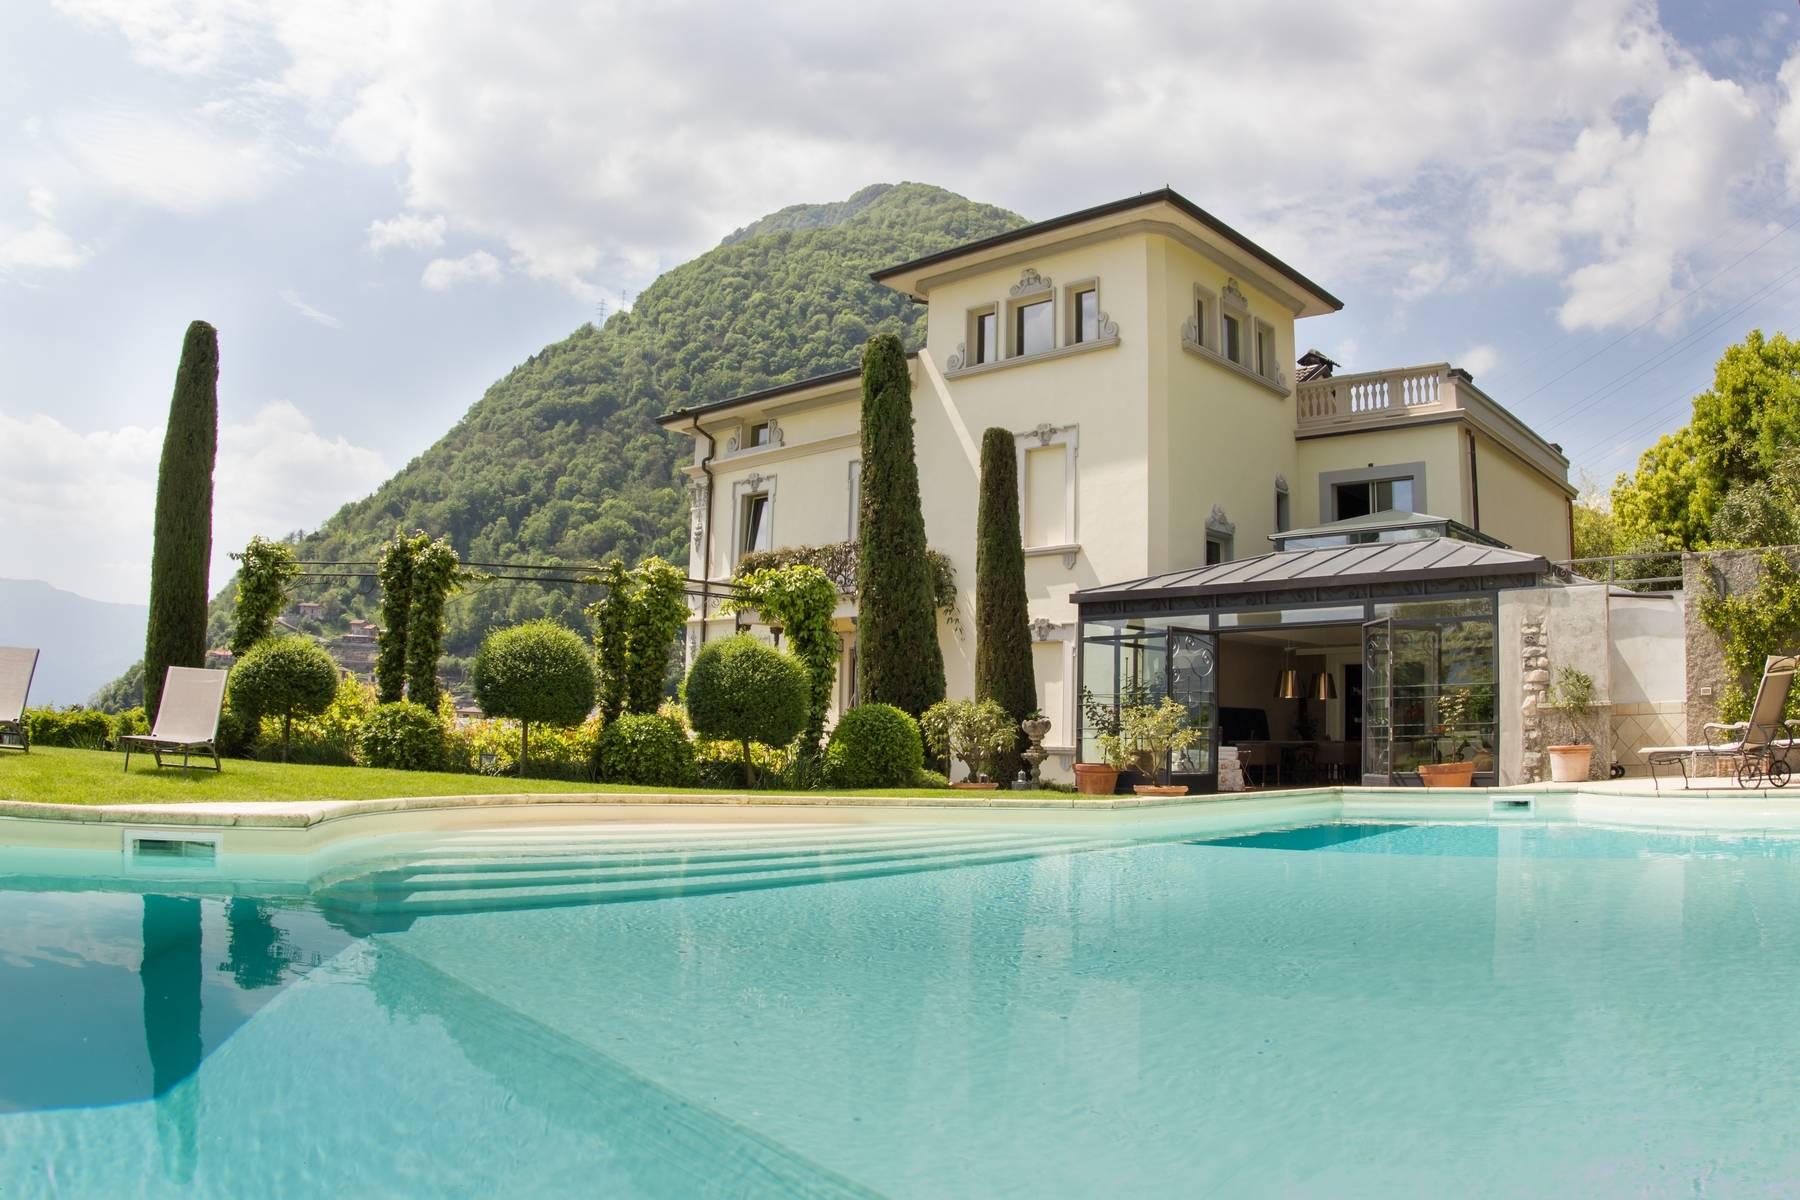 Villa Luminosa - An illustrious estate overlooking Lake Como - 1